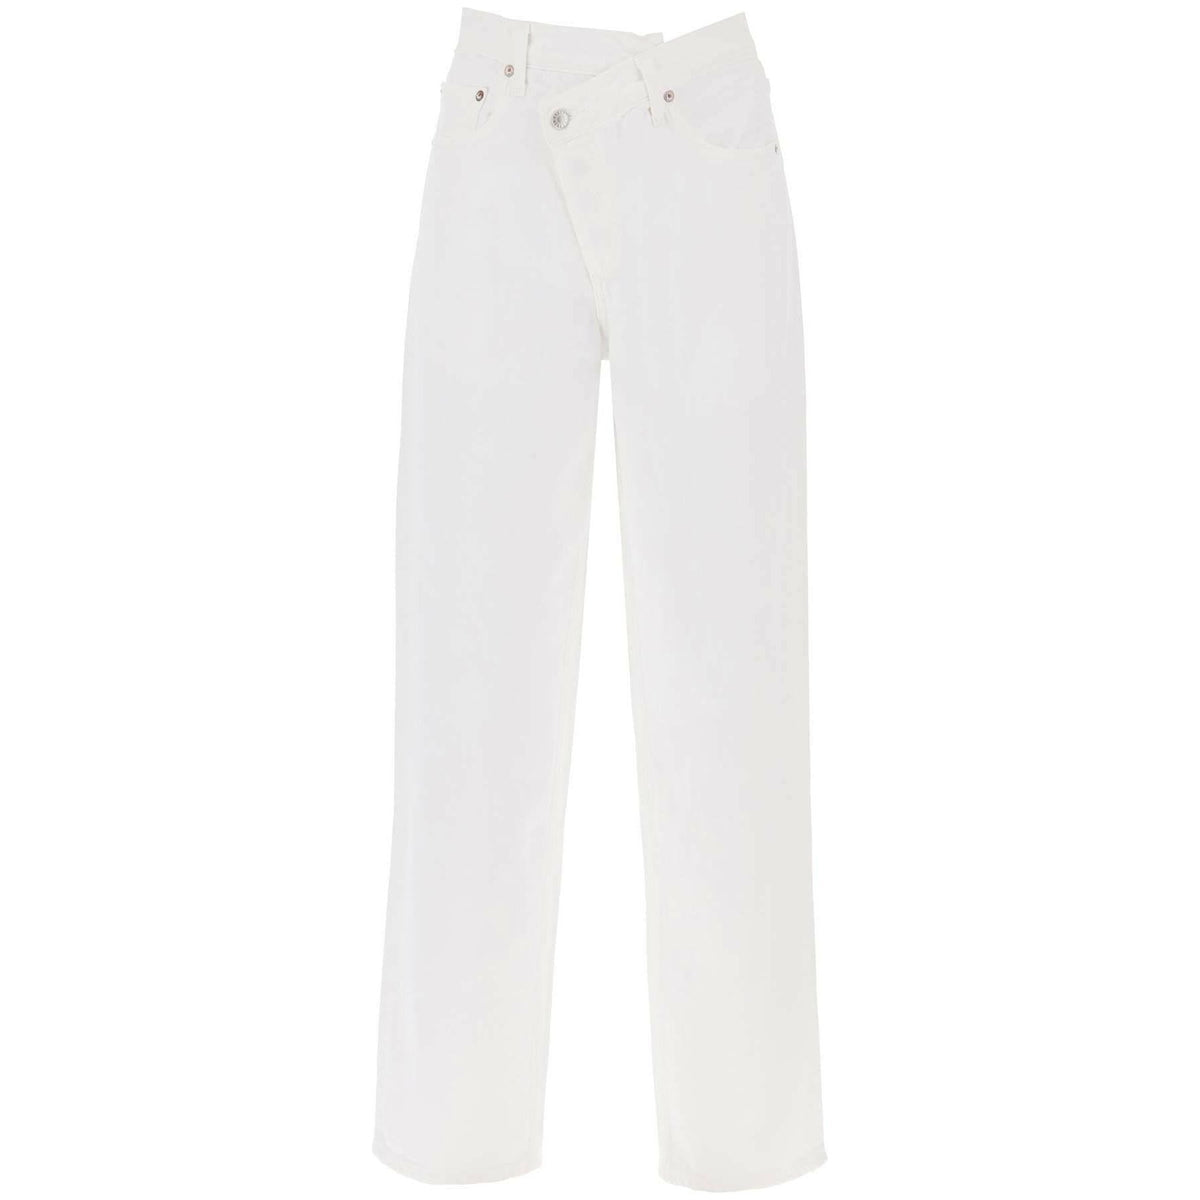 AGOLDE - White Criss Cross Organic Cotton Jeans in Milkshake - JOHN JULIA